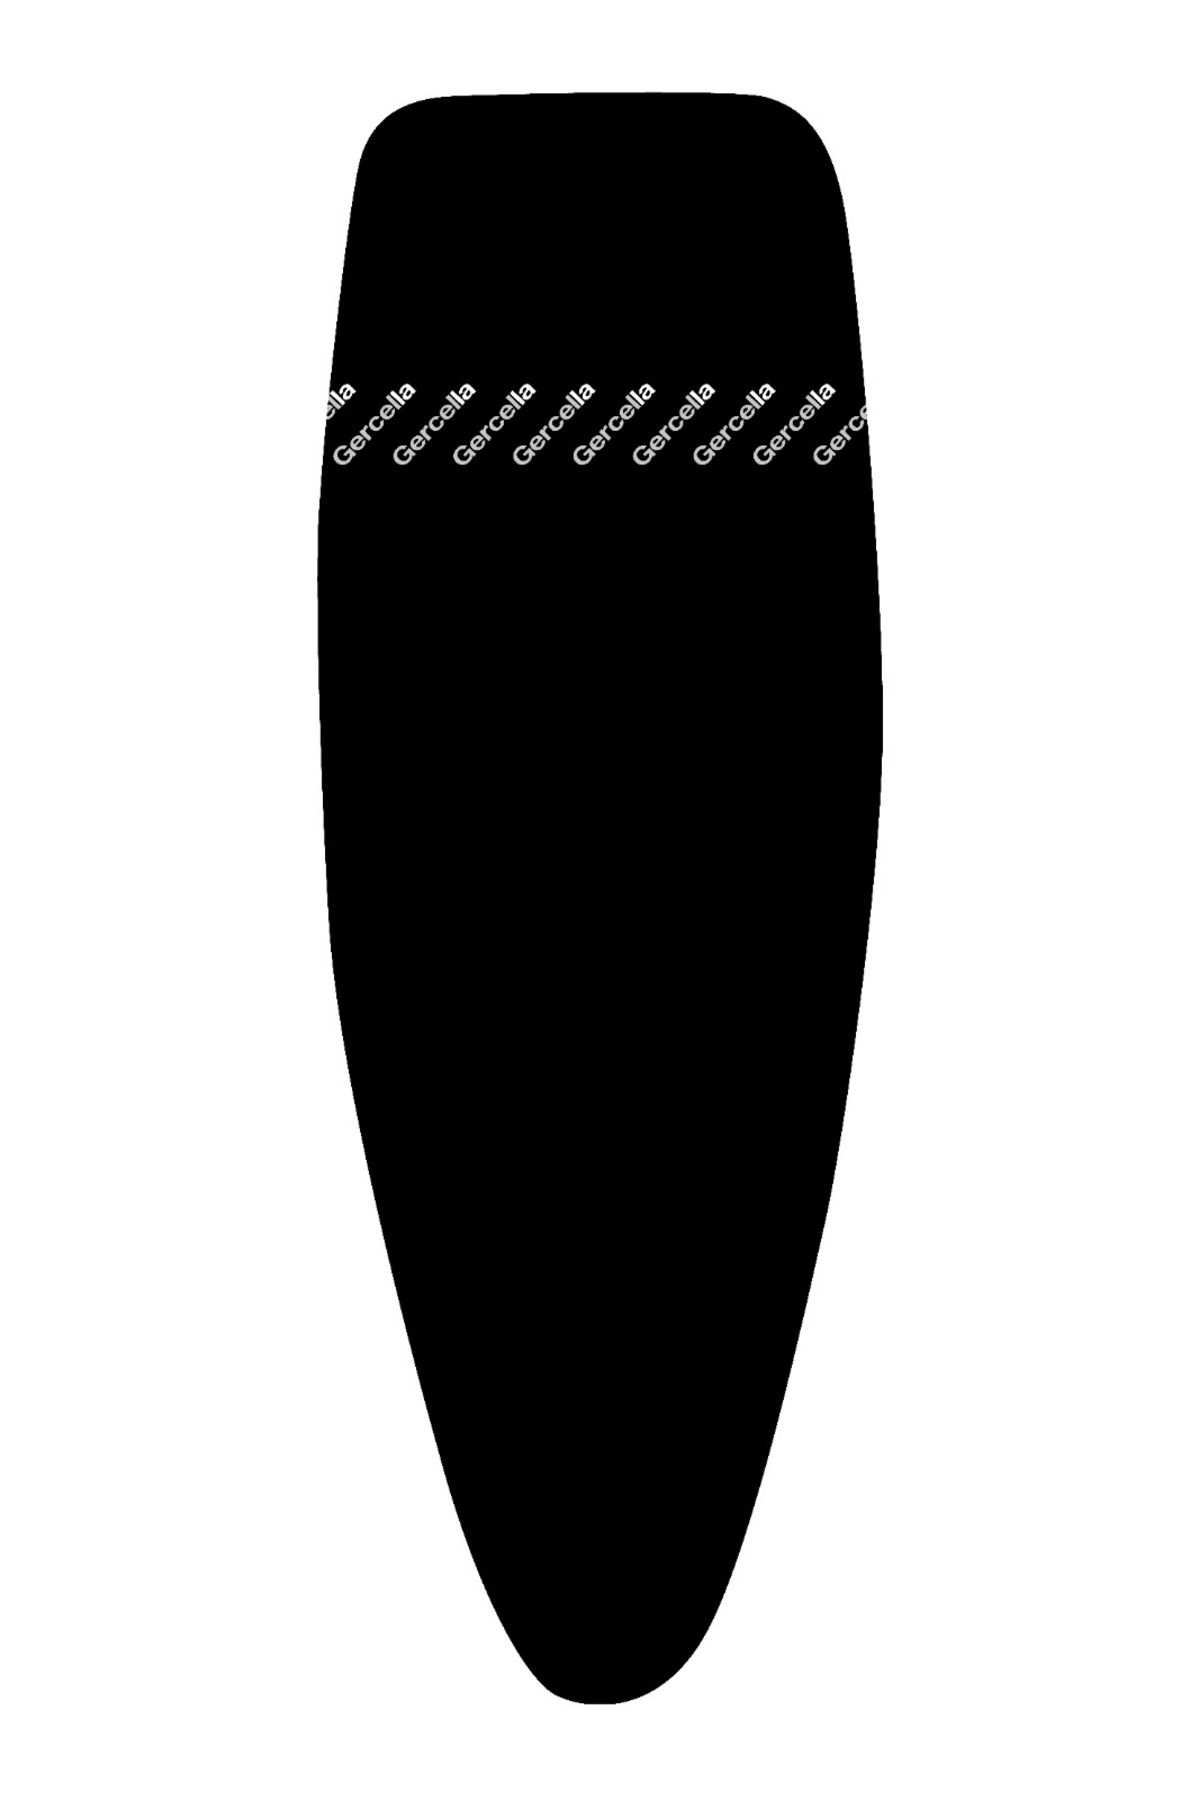 GERCELLA Xxl Luxury Ütü Masası Bezi Kılıfı Örtüsü Siyah (57X162CM)